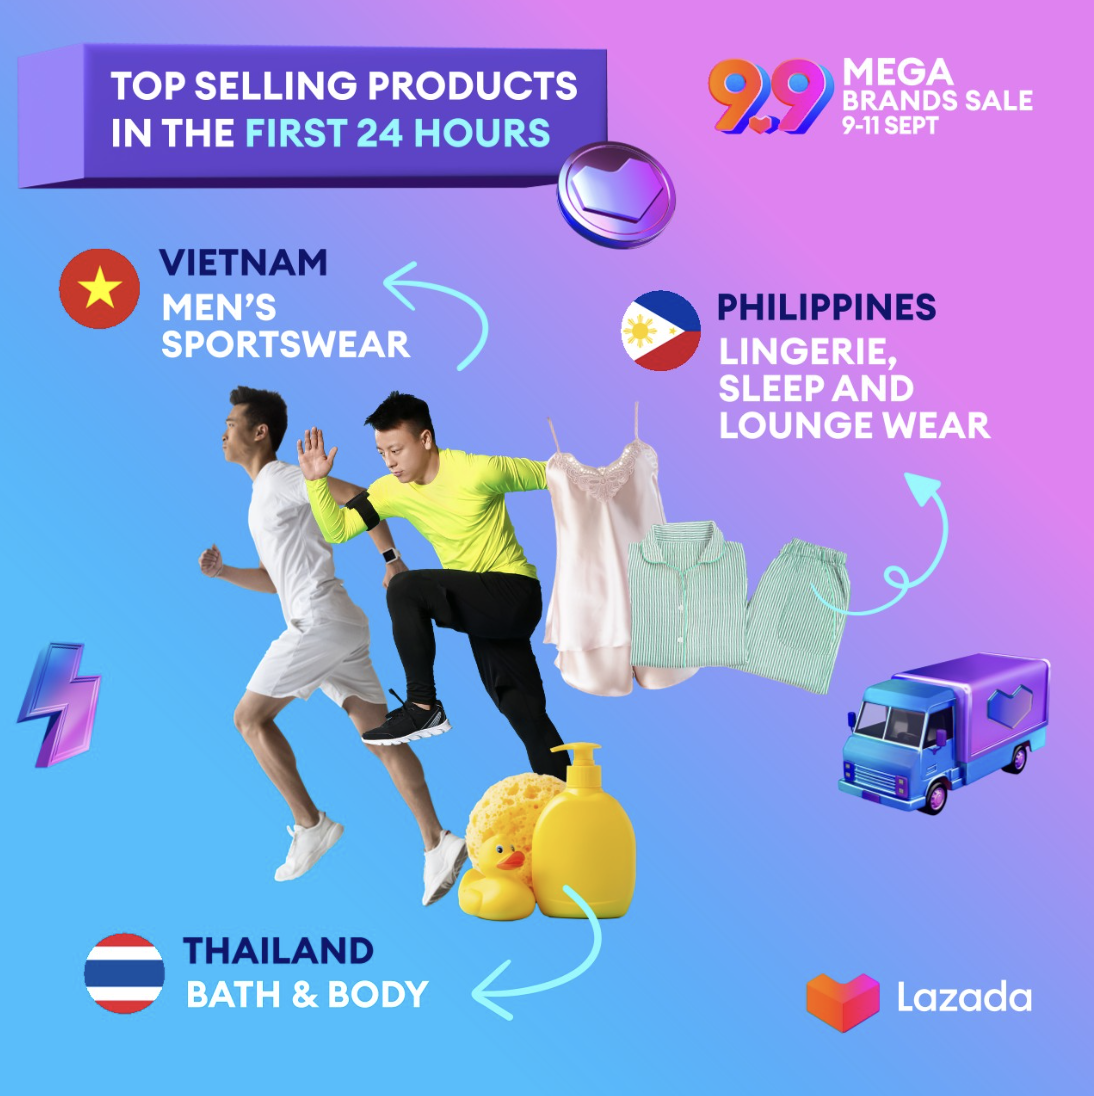 Lazada 9.9品牌大促圆满落幕，中国鞋服、母婴用品获东南亚消费者追捧